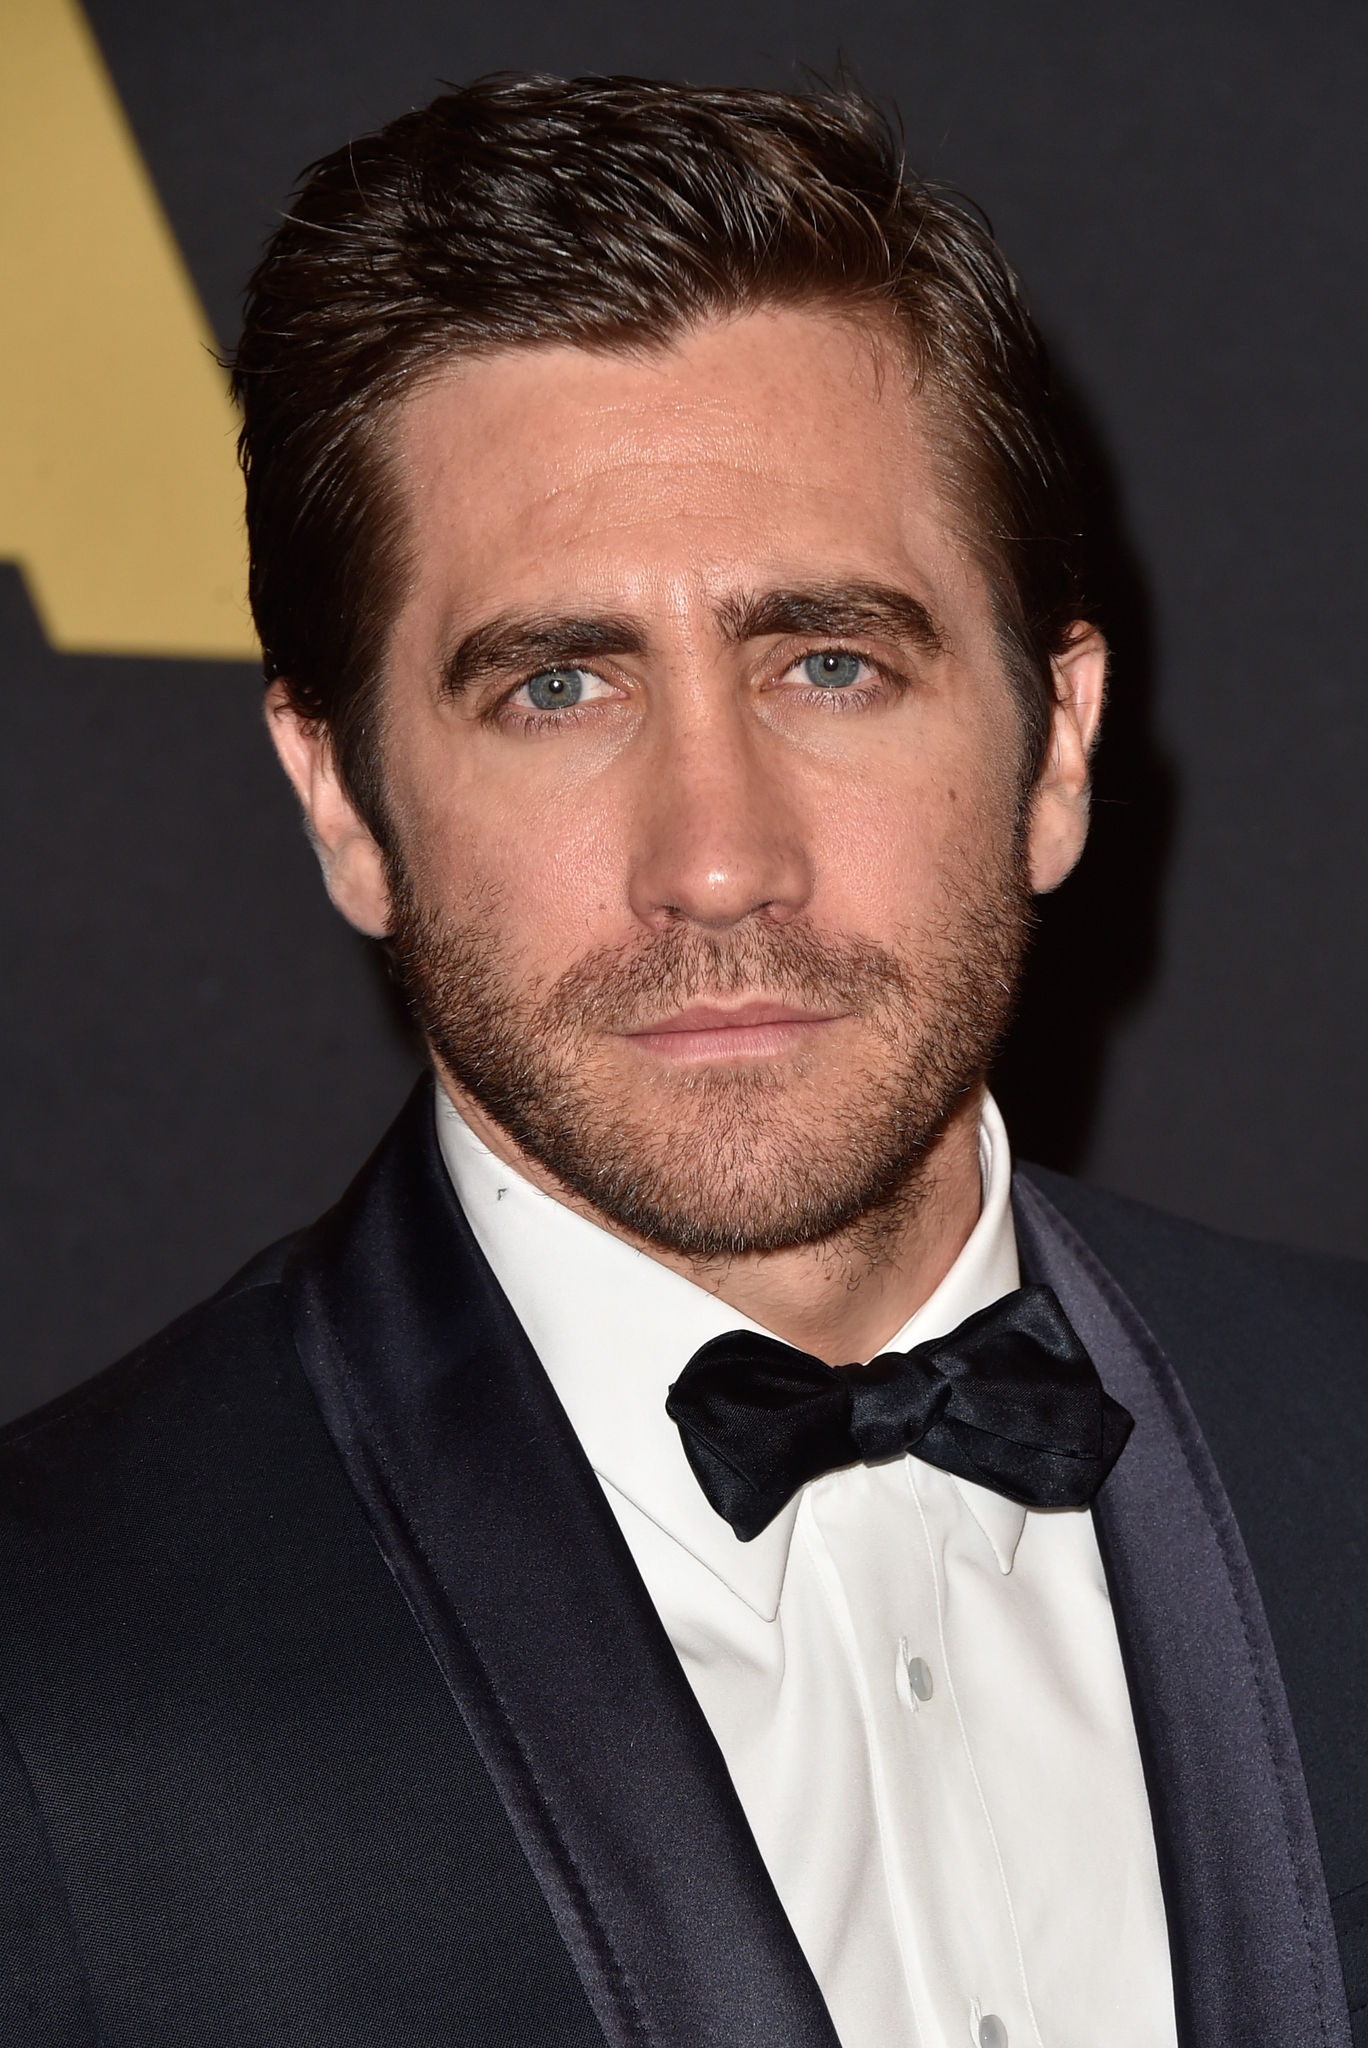  Jake Gyllenhaal életrajz